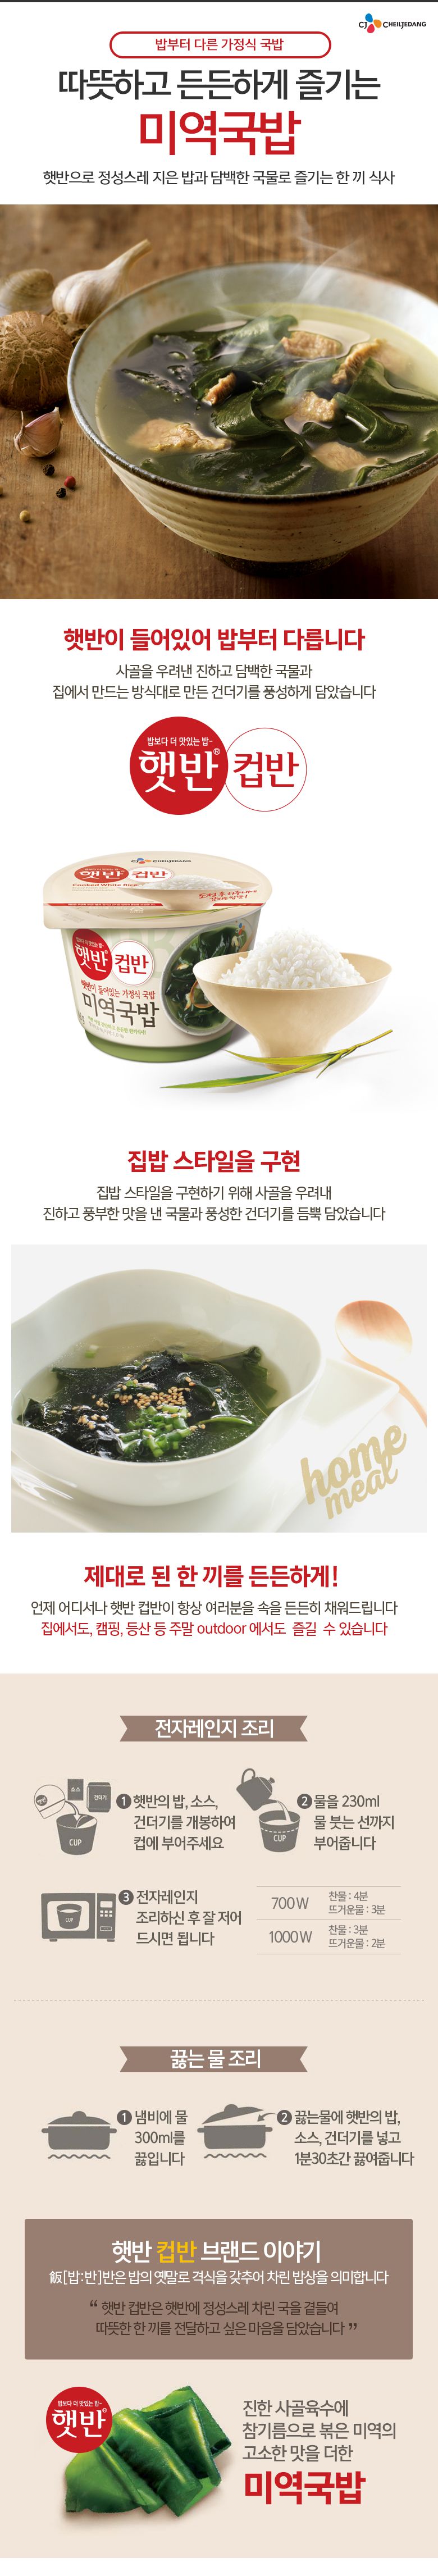 韓國食品-[CJ] 컵반[미역국밥] 167g